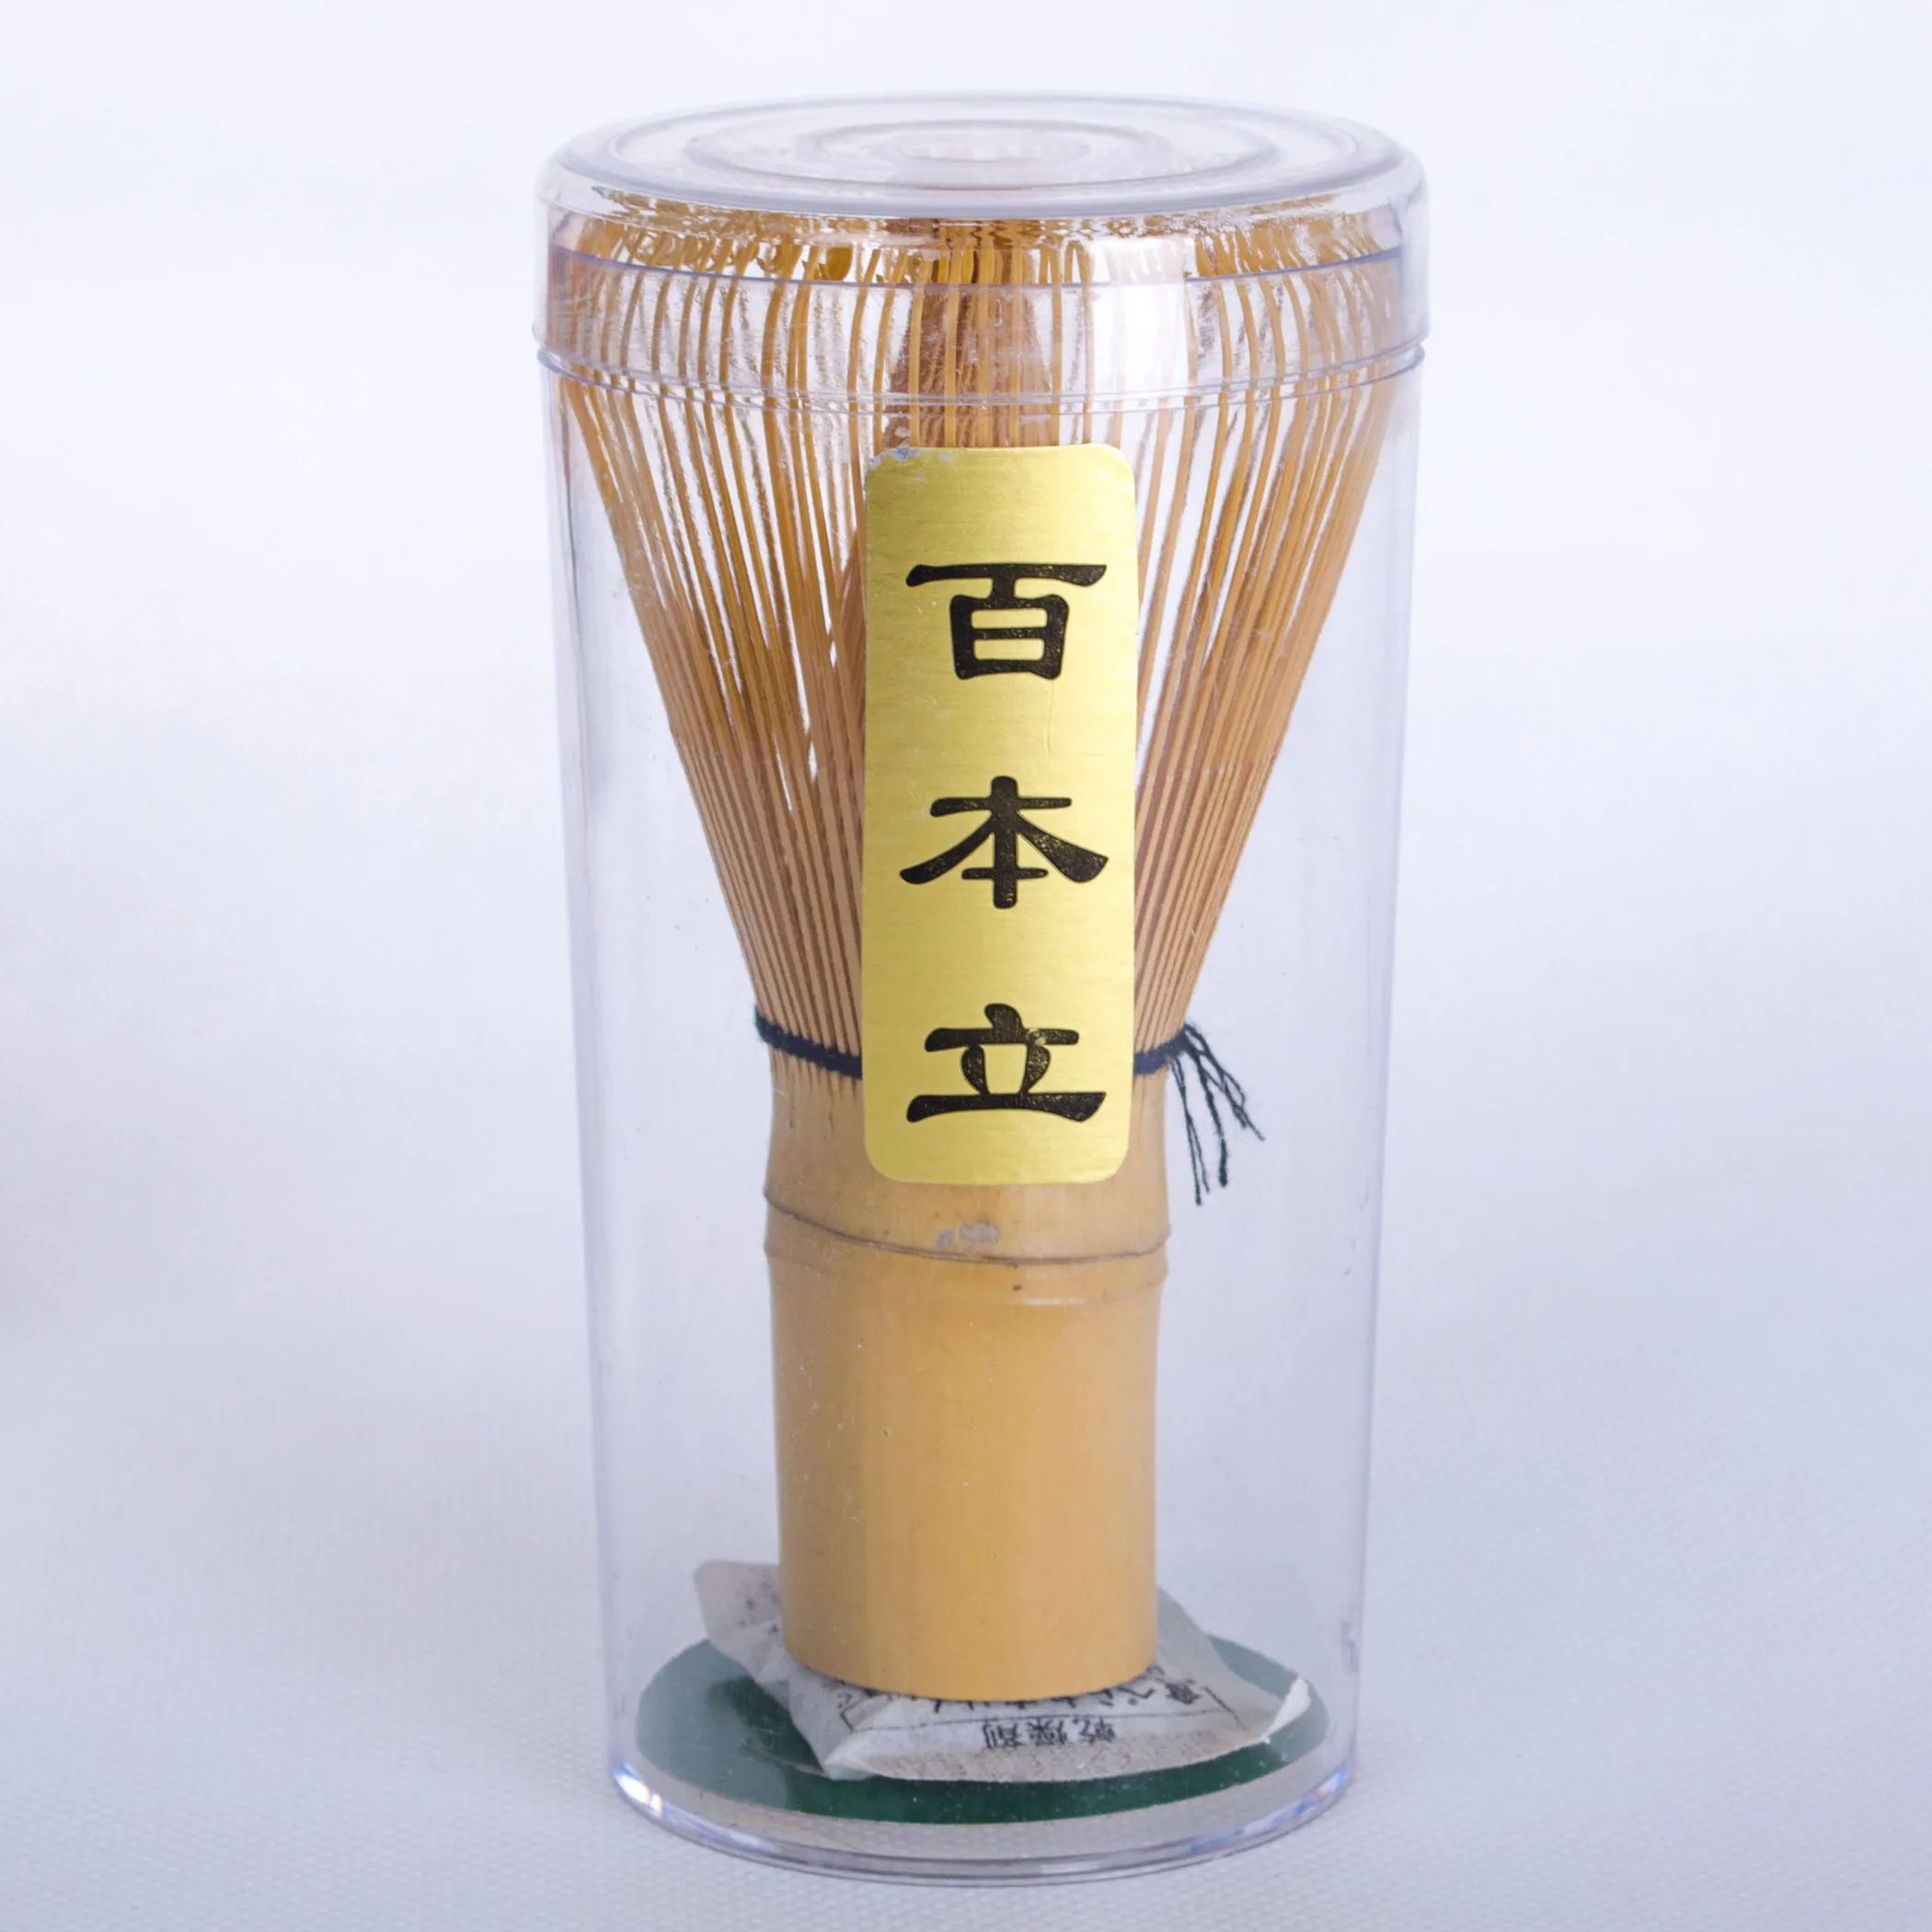 1 x Neues japanisches Bambus-Chasen-Set (Grüntee-Schneebesen) zum Zubereiten von Matcha-Grüntee-Pulver - Kaffee-Tee-Werkzeuge